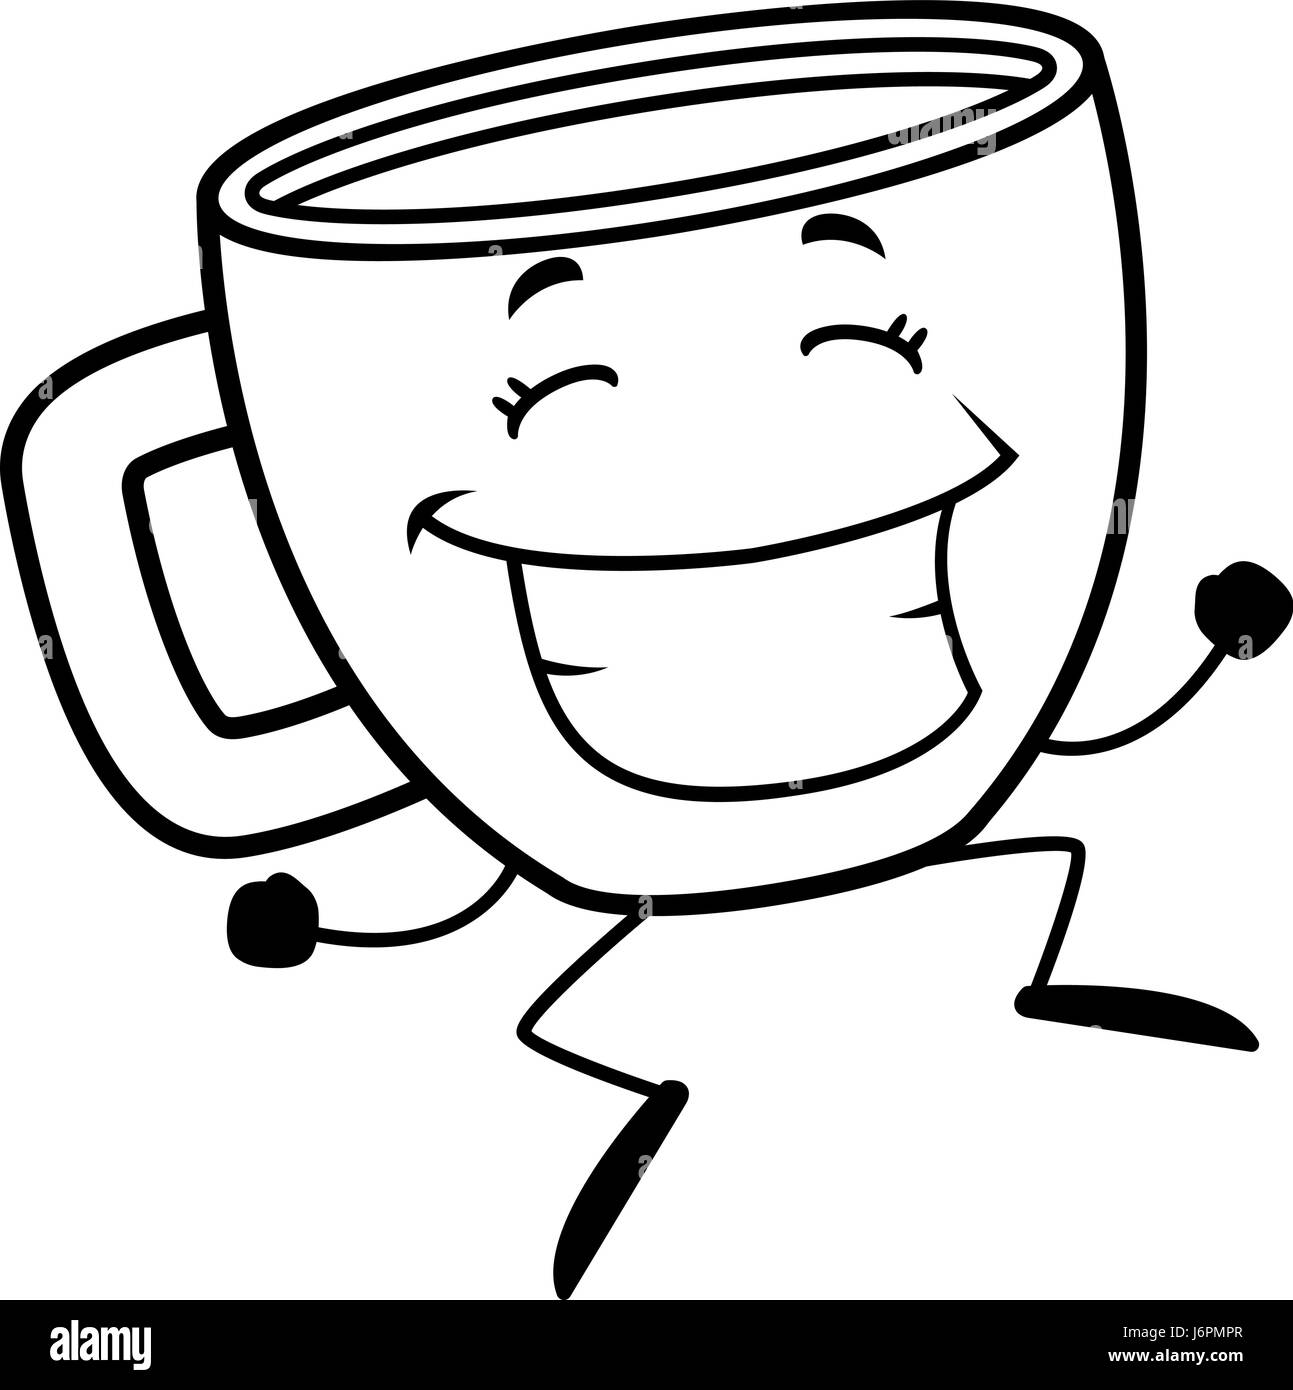 https://c8.alamy.com/compes/j6pmpr/una-taza-de-cafe-de-dibujos-animados-feliz-saltando-y-sonriendo-j6pmpr.jpg